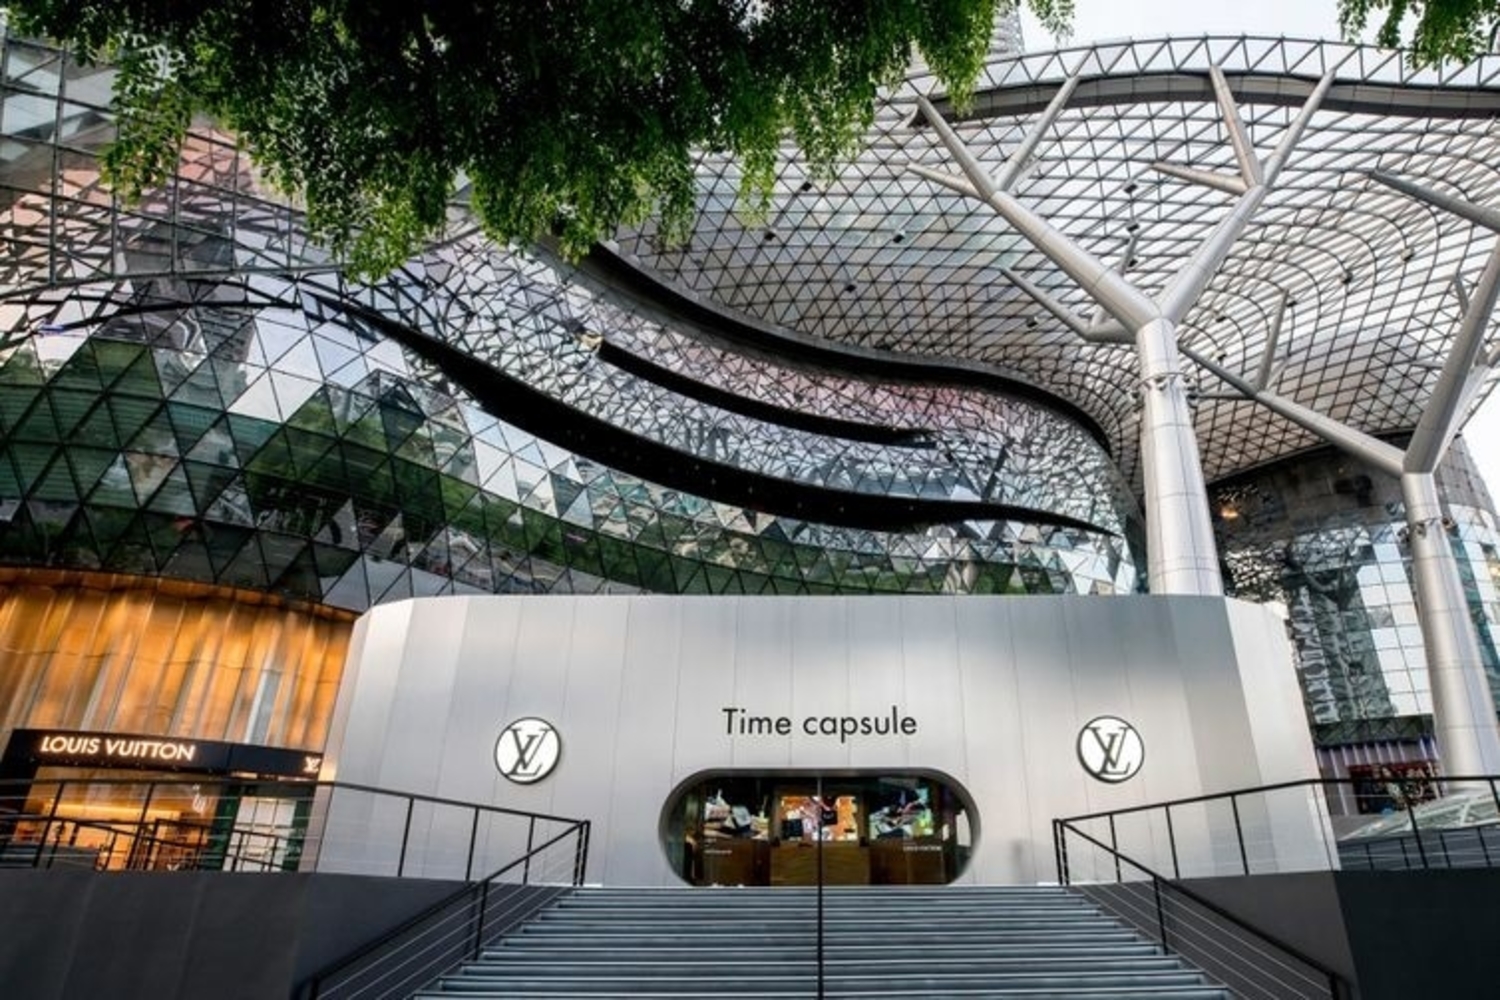 Louis Vuitton’s Time Capsule exhibition arrives in Singapore - Remix Magazine